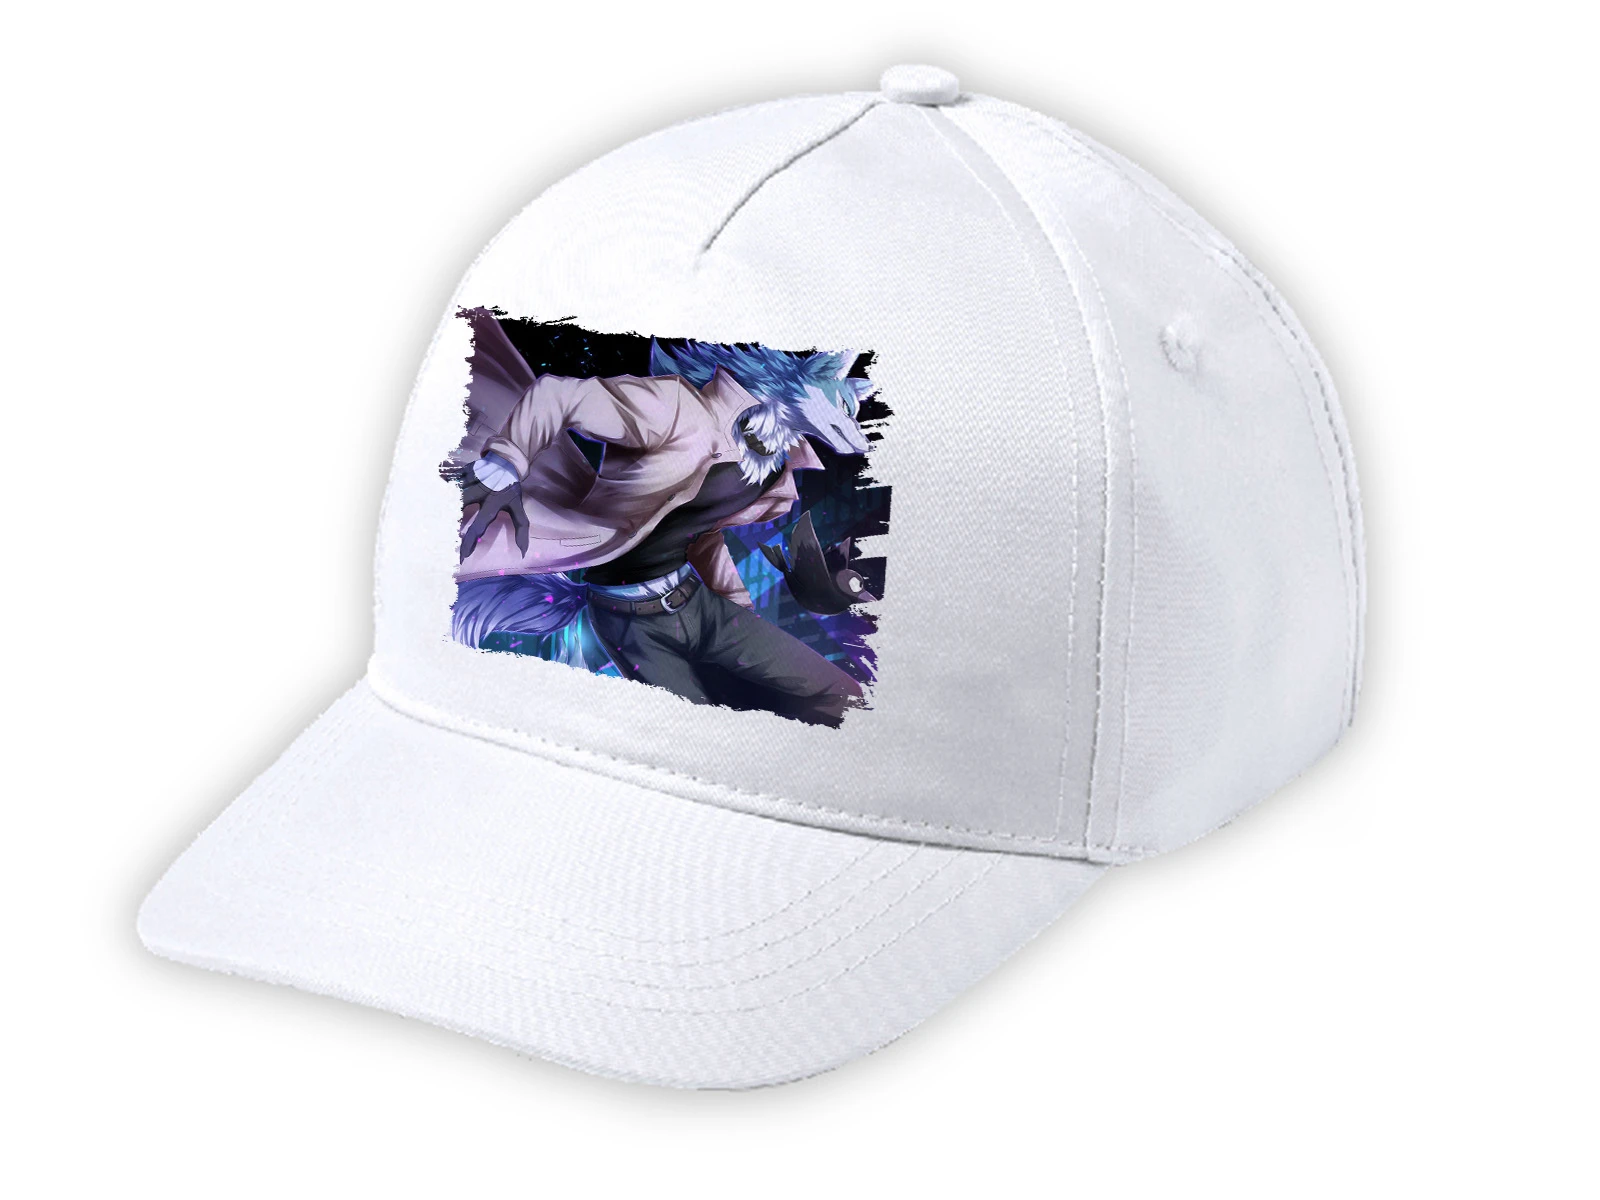 White cap BRAND NEW ANIMAL SHIROU white kid cap|Running Caps| - AliExpress